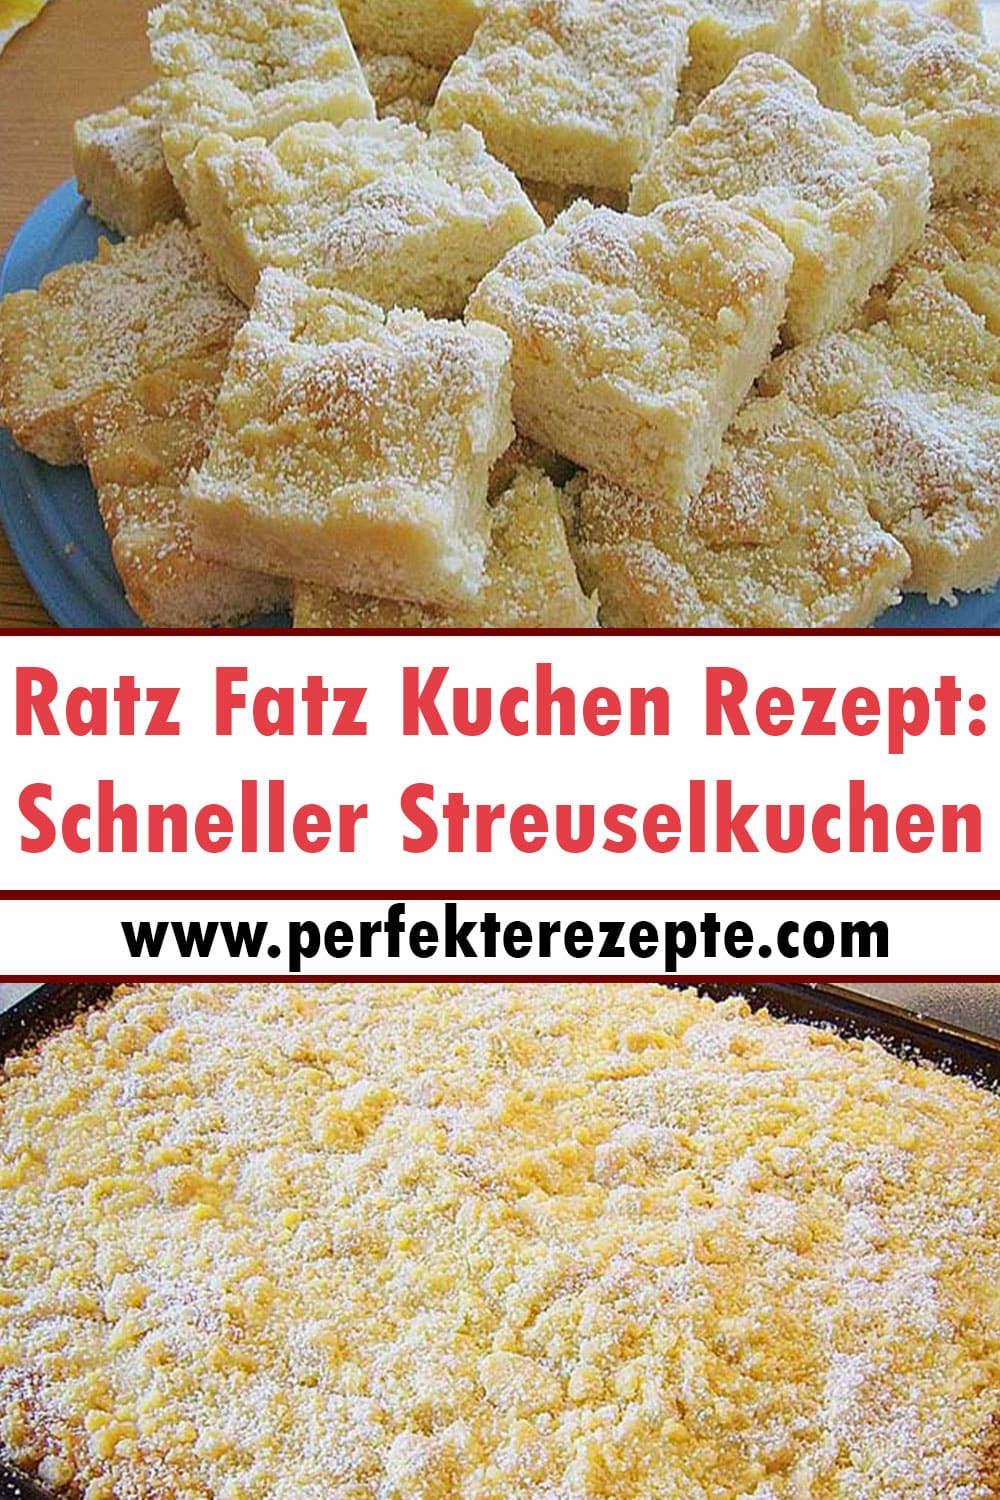 Ratz Fatz Kuchen Rezept: Schneller Streuselkuchen